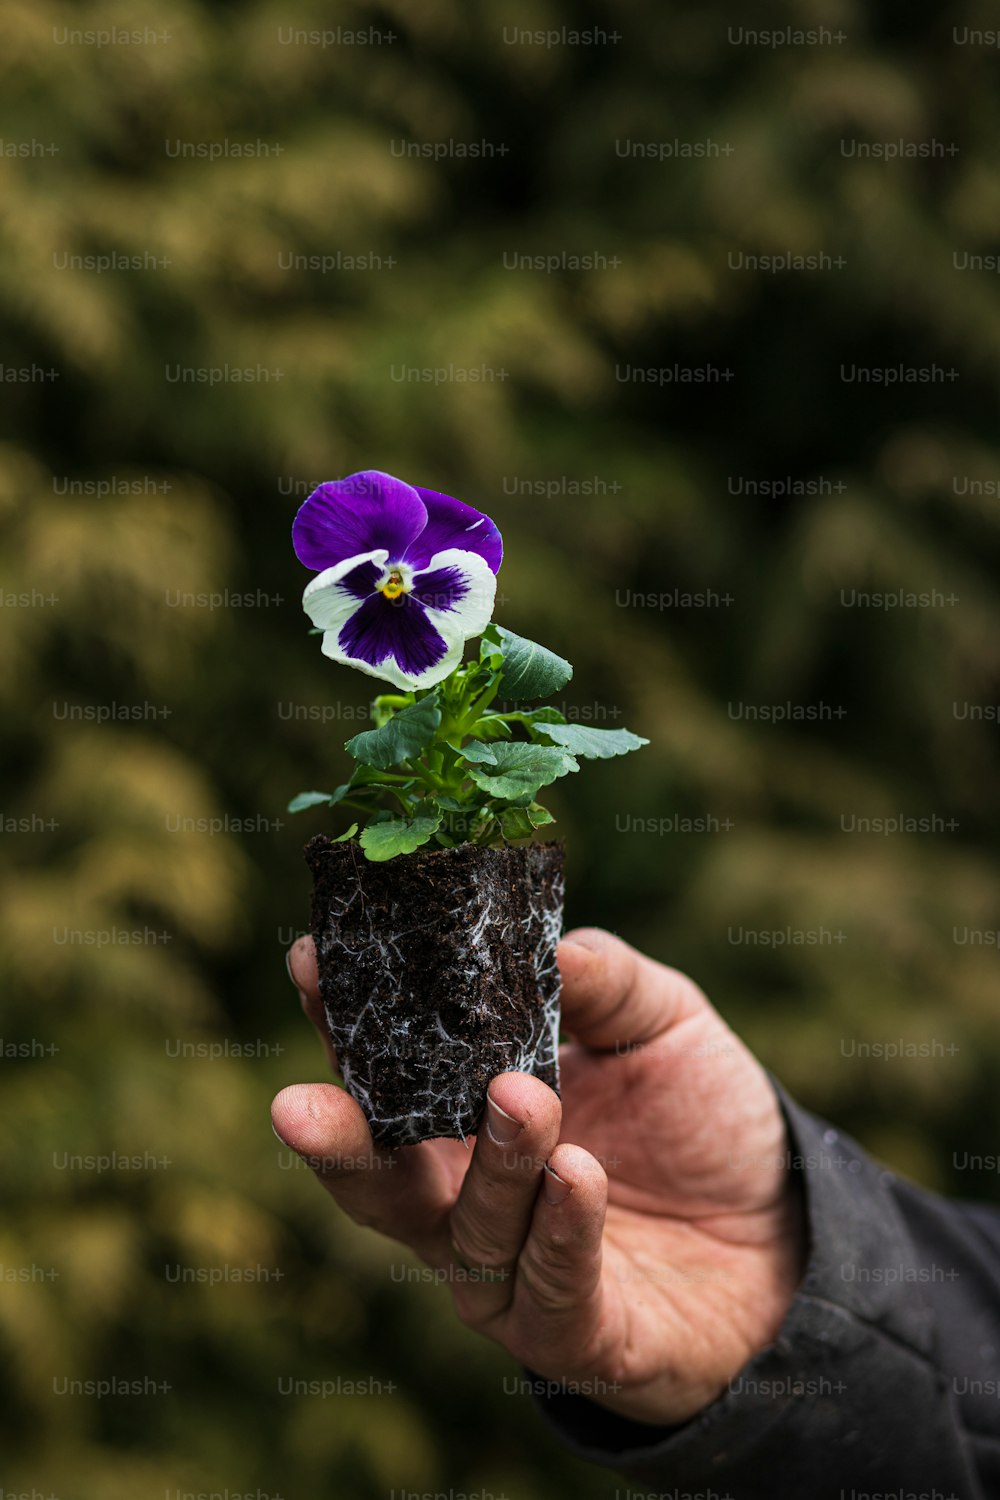 eine Person, die eine kleine Topfpflanze mit einer violetten Blume hält